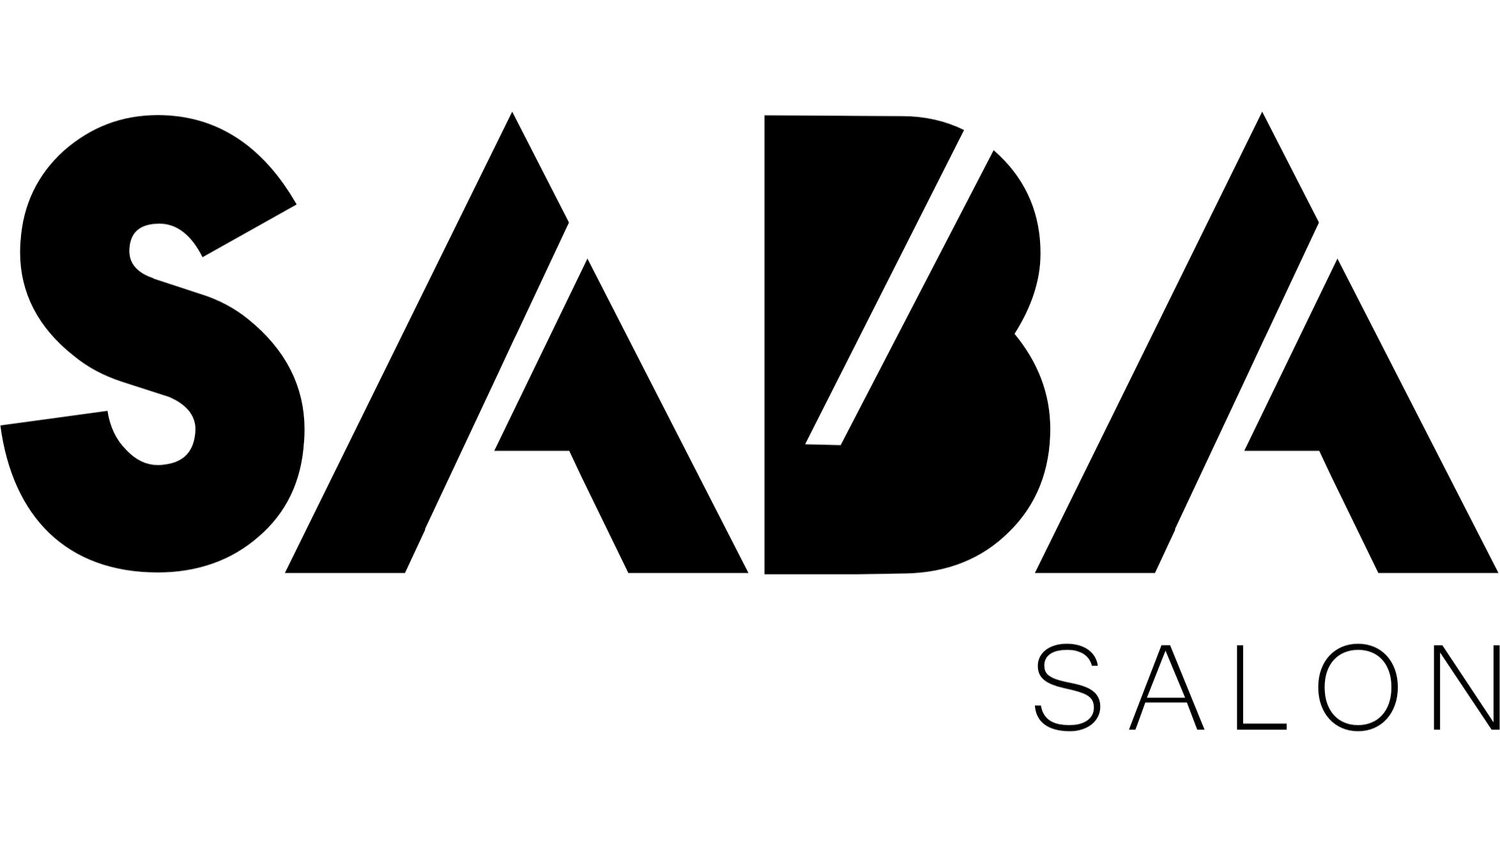 Saba Salon 2021